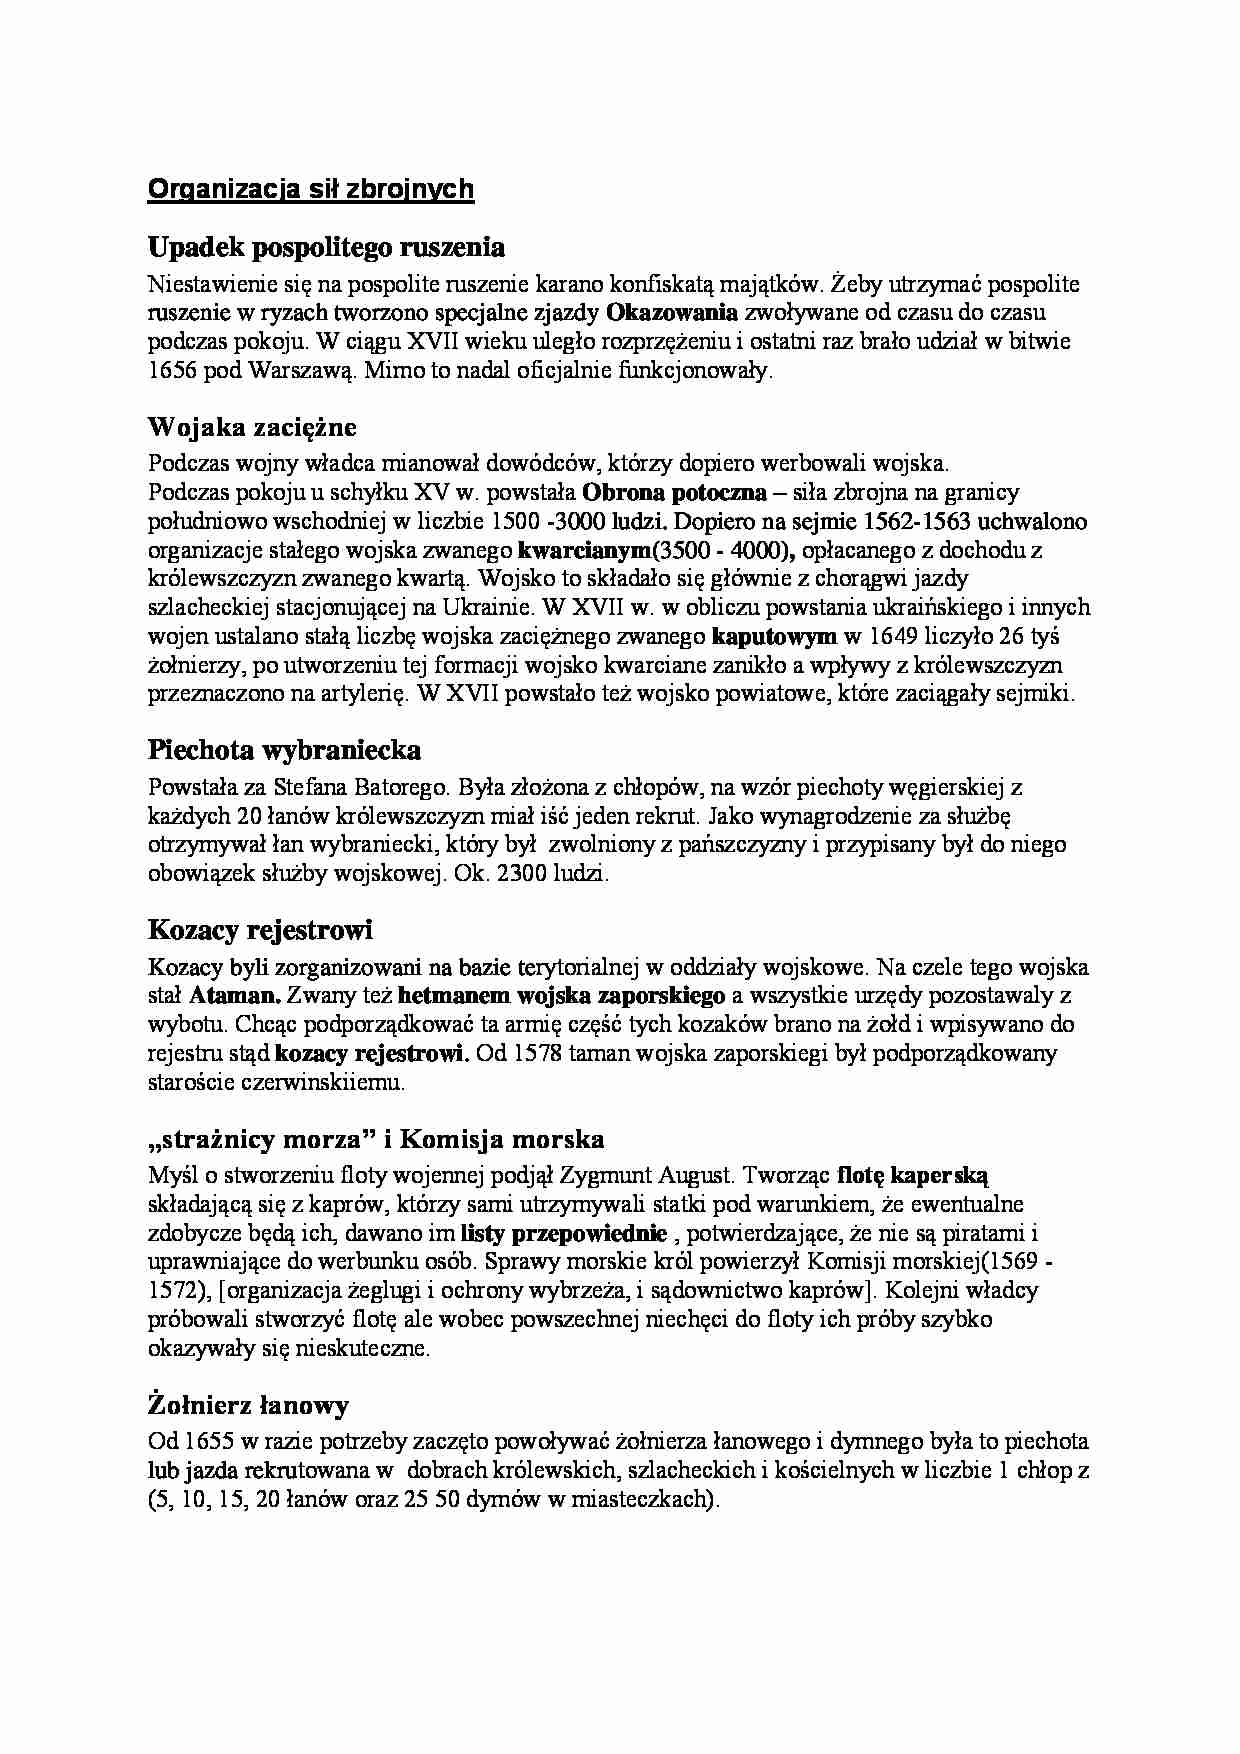 Rzeczpospolita szlachecka - Organizacja sił zbrojnych - strona 1